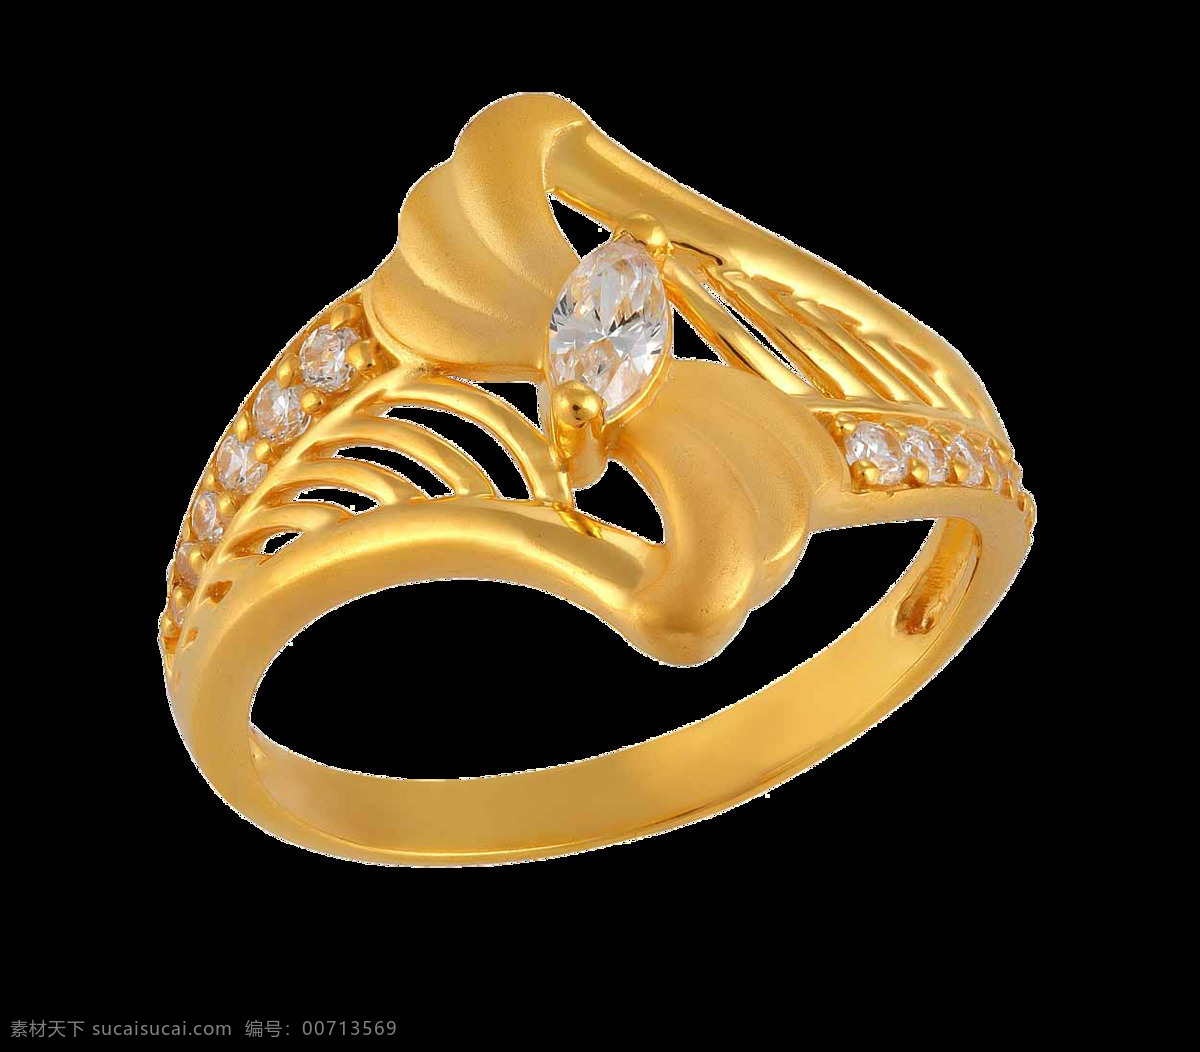 镂空 花纹 黄金 戒指 免 抠 透明 黄金女士戒指 黄金元素 黄金图片素材 黄金广告图片